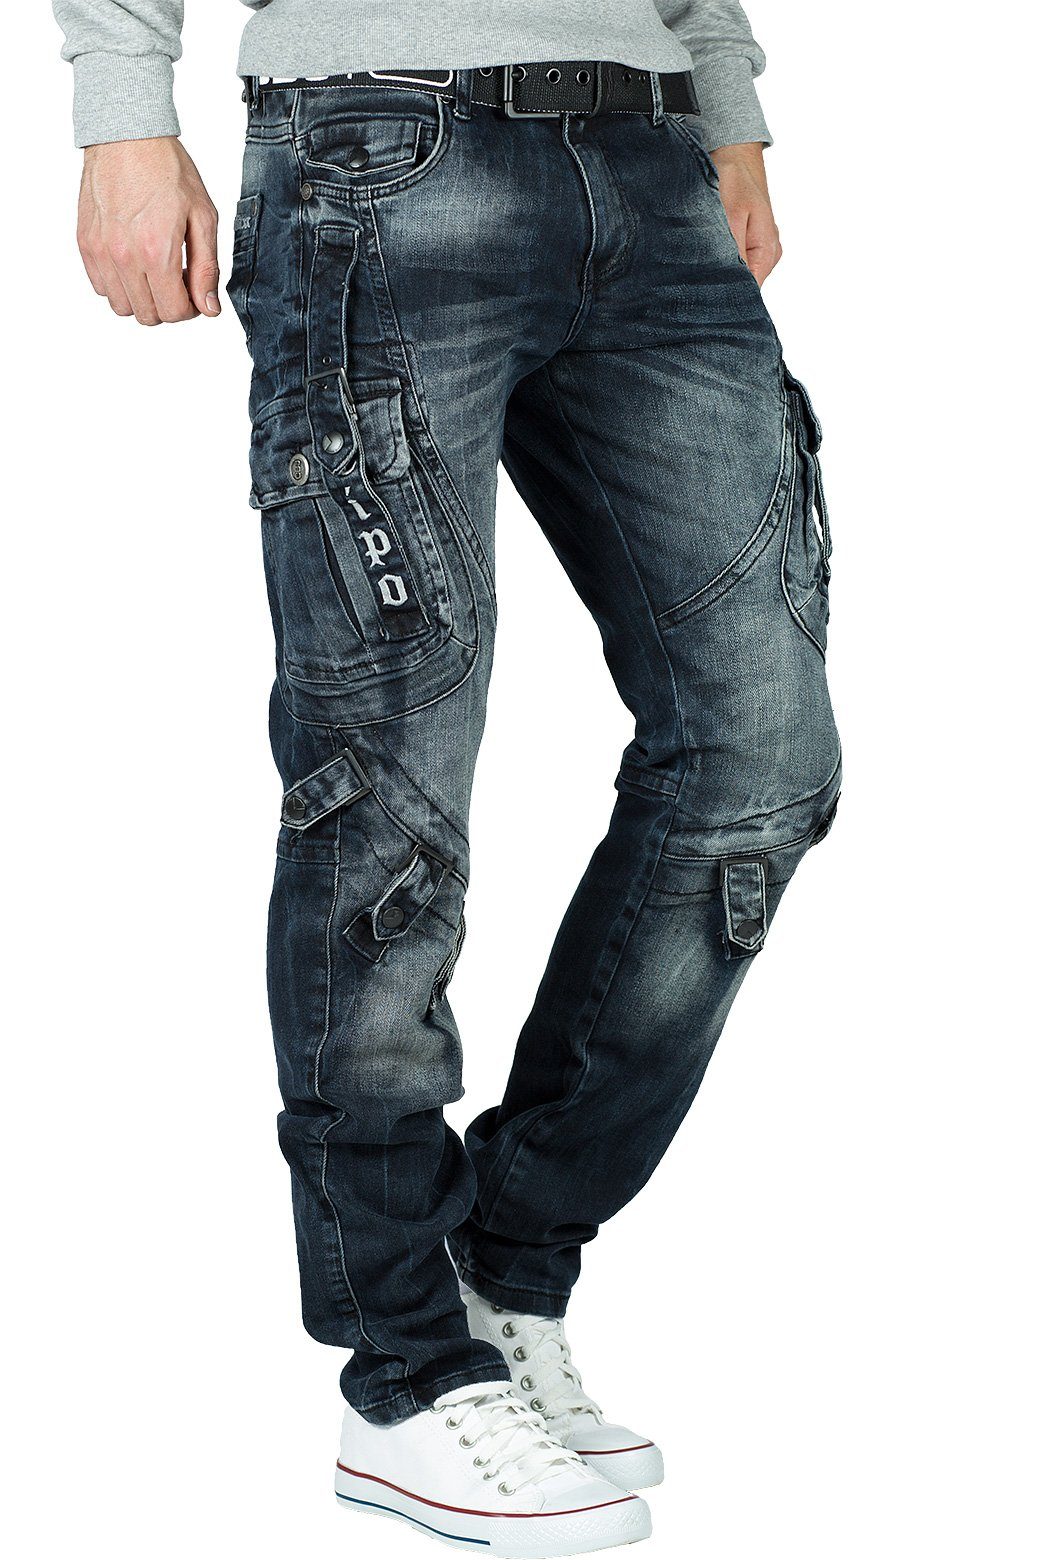 Herren Jeans Cipo & Baxx Regular-fit-Jeans BA-CD440 Freizeithose stonewashed Effekt Bikerstyle mit Seitentaschen